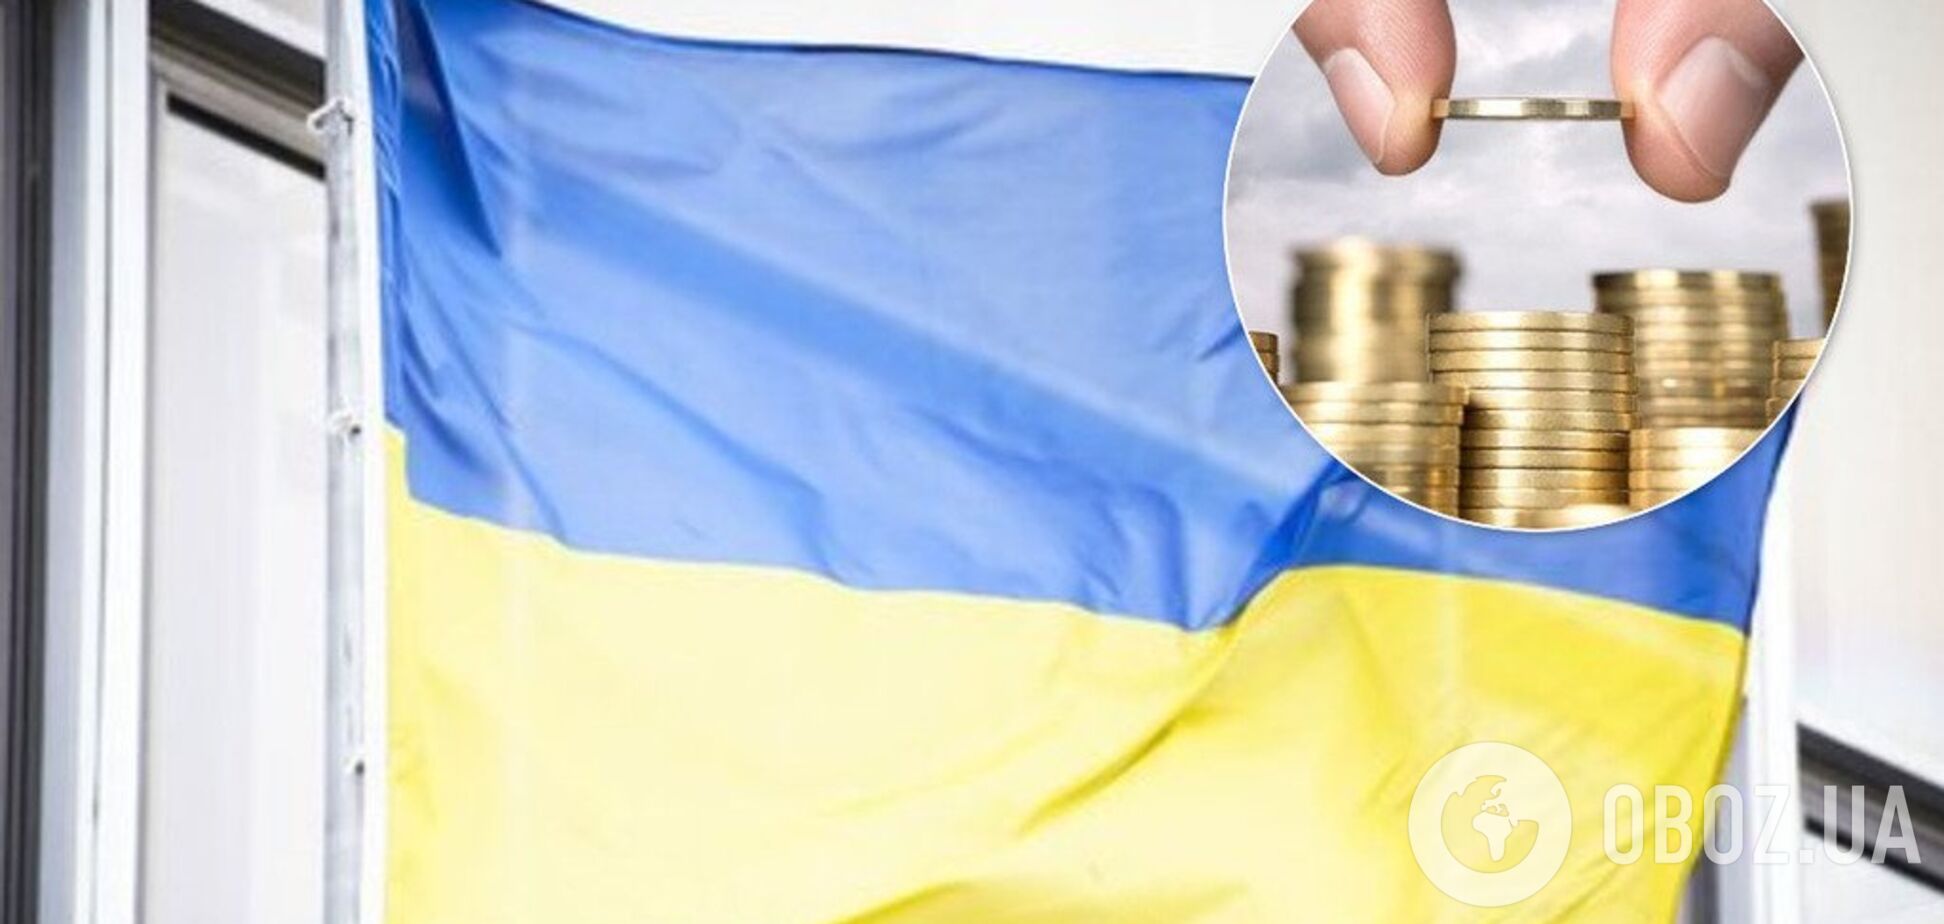 Украина наберет более 16 млрд грн долгов из-за провала важной реформы